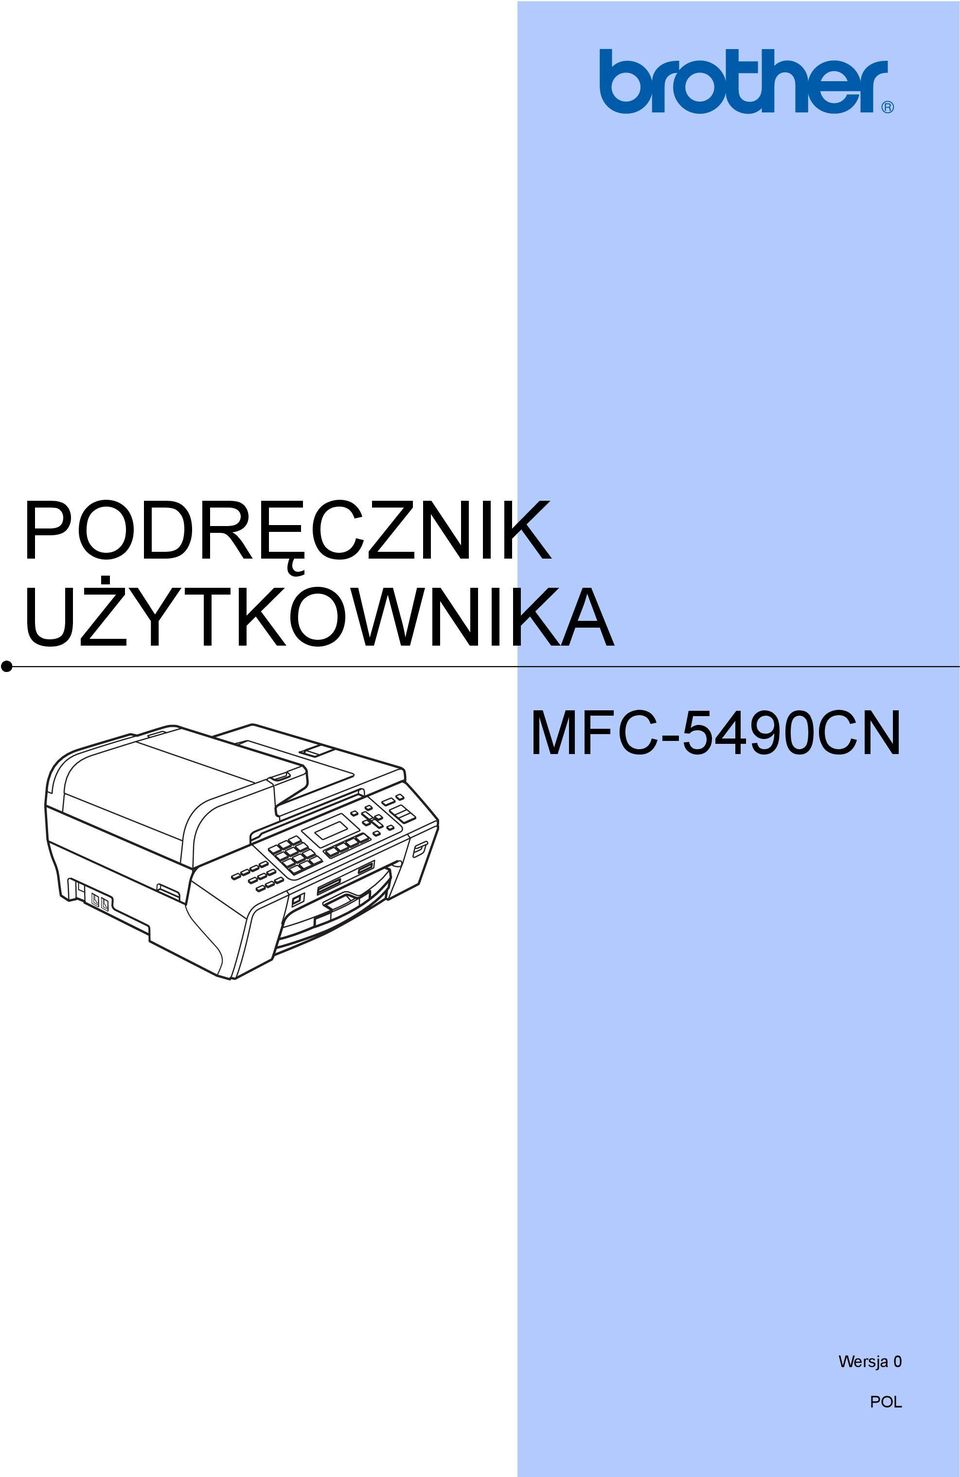 MFC-5490CN